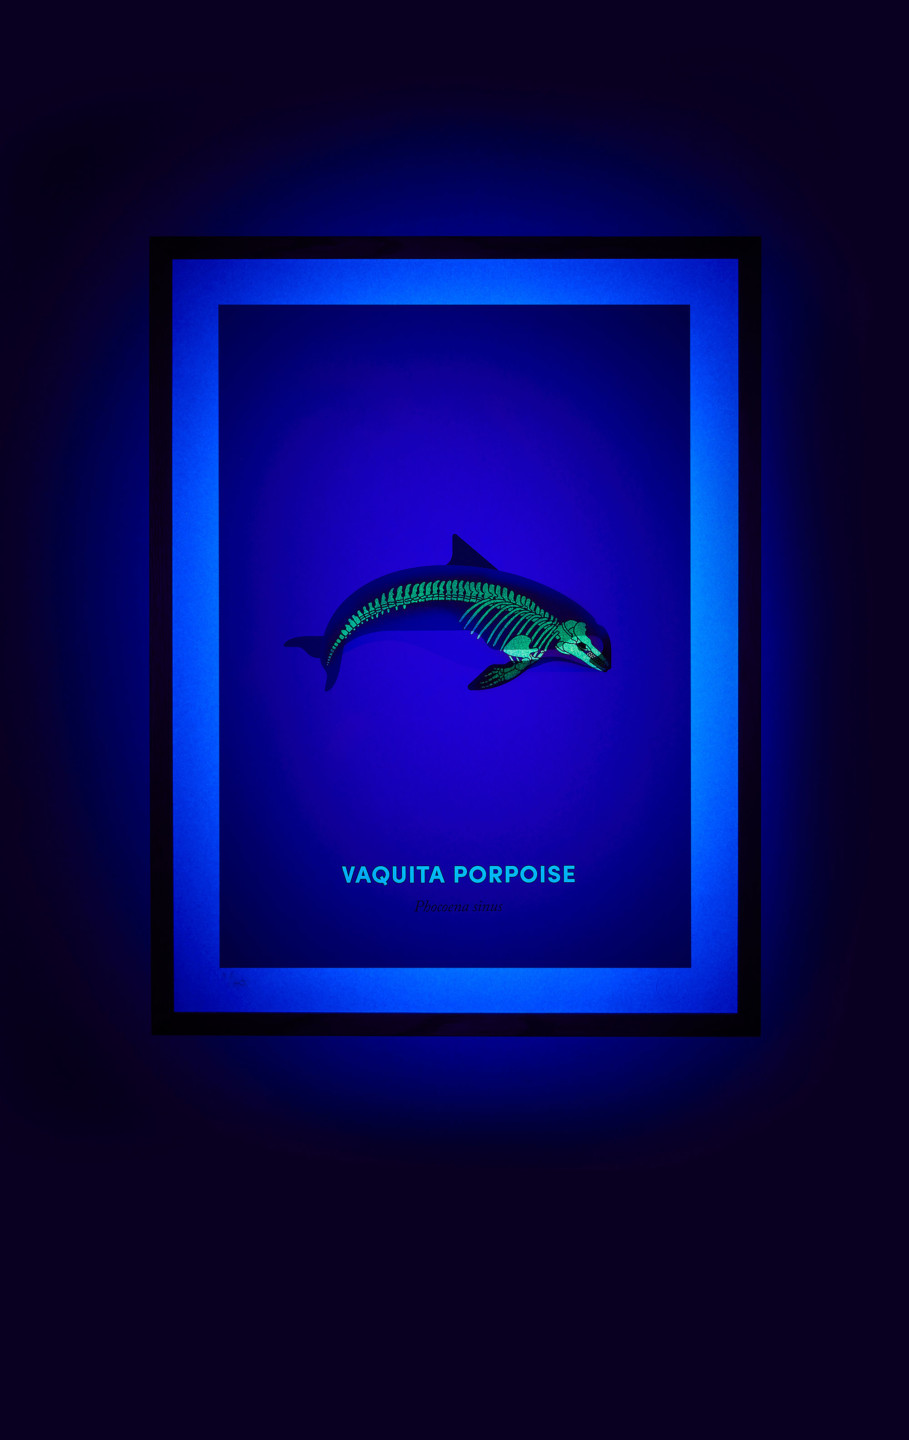 Vaquita Porpoise screen print under UV light - shown on hover